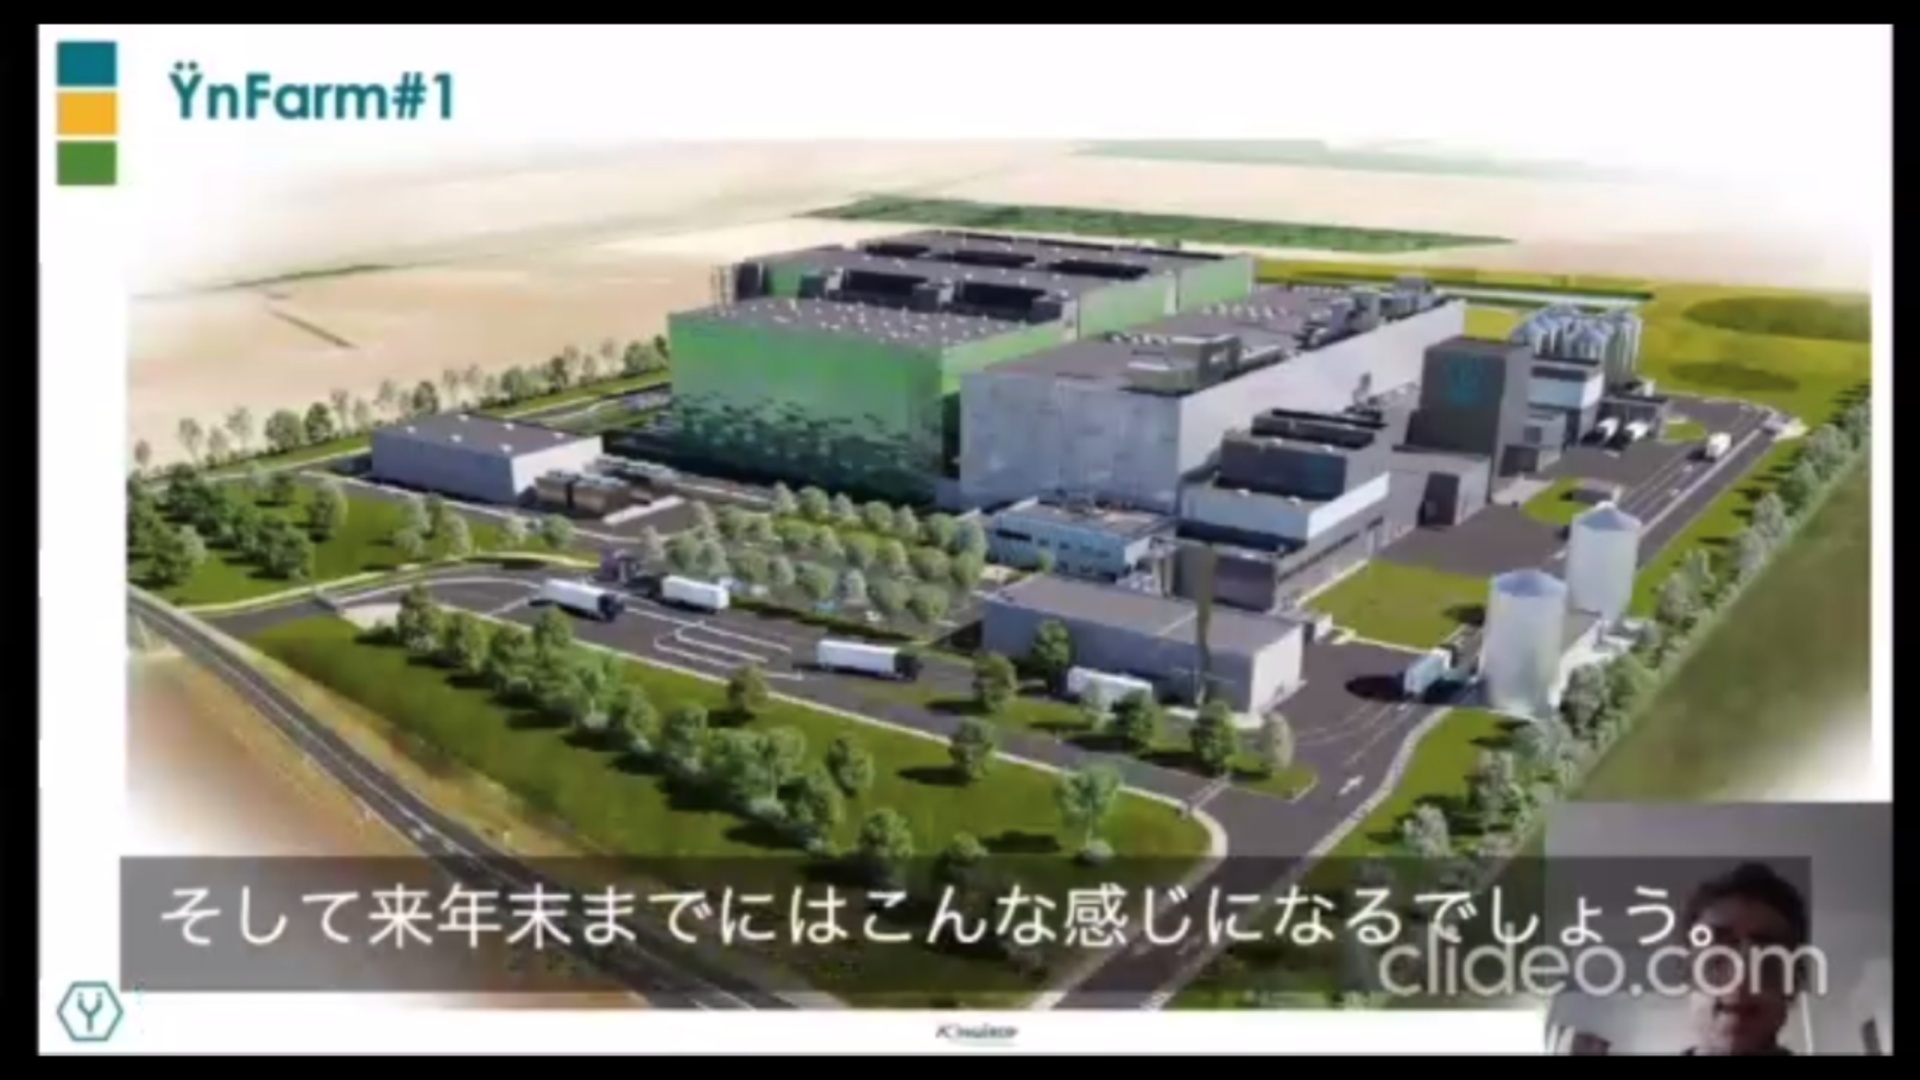 仏アミアンに2021年末の完成を予定している工場の予想図